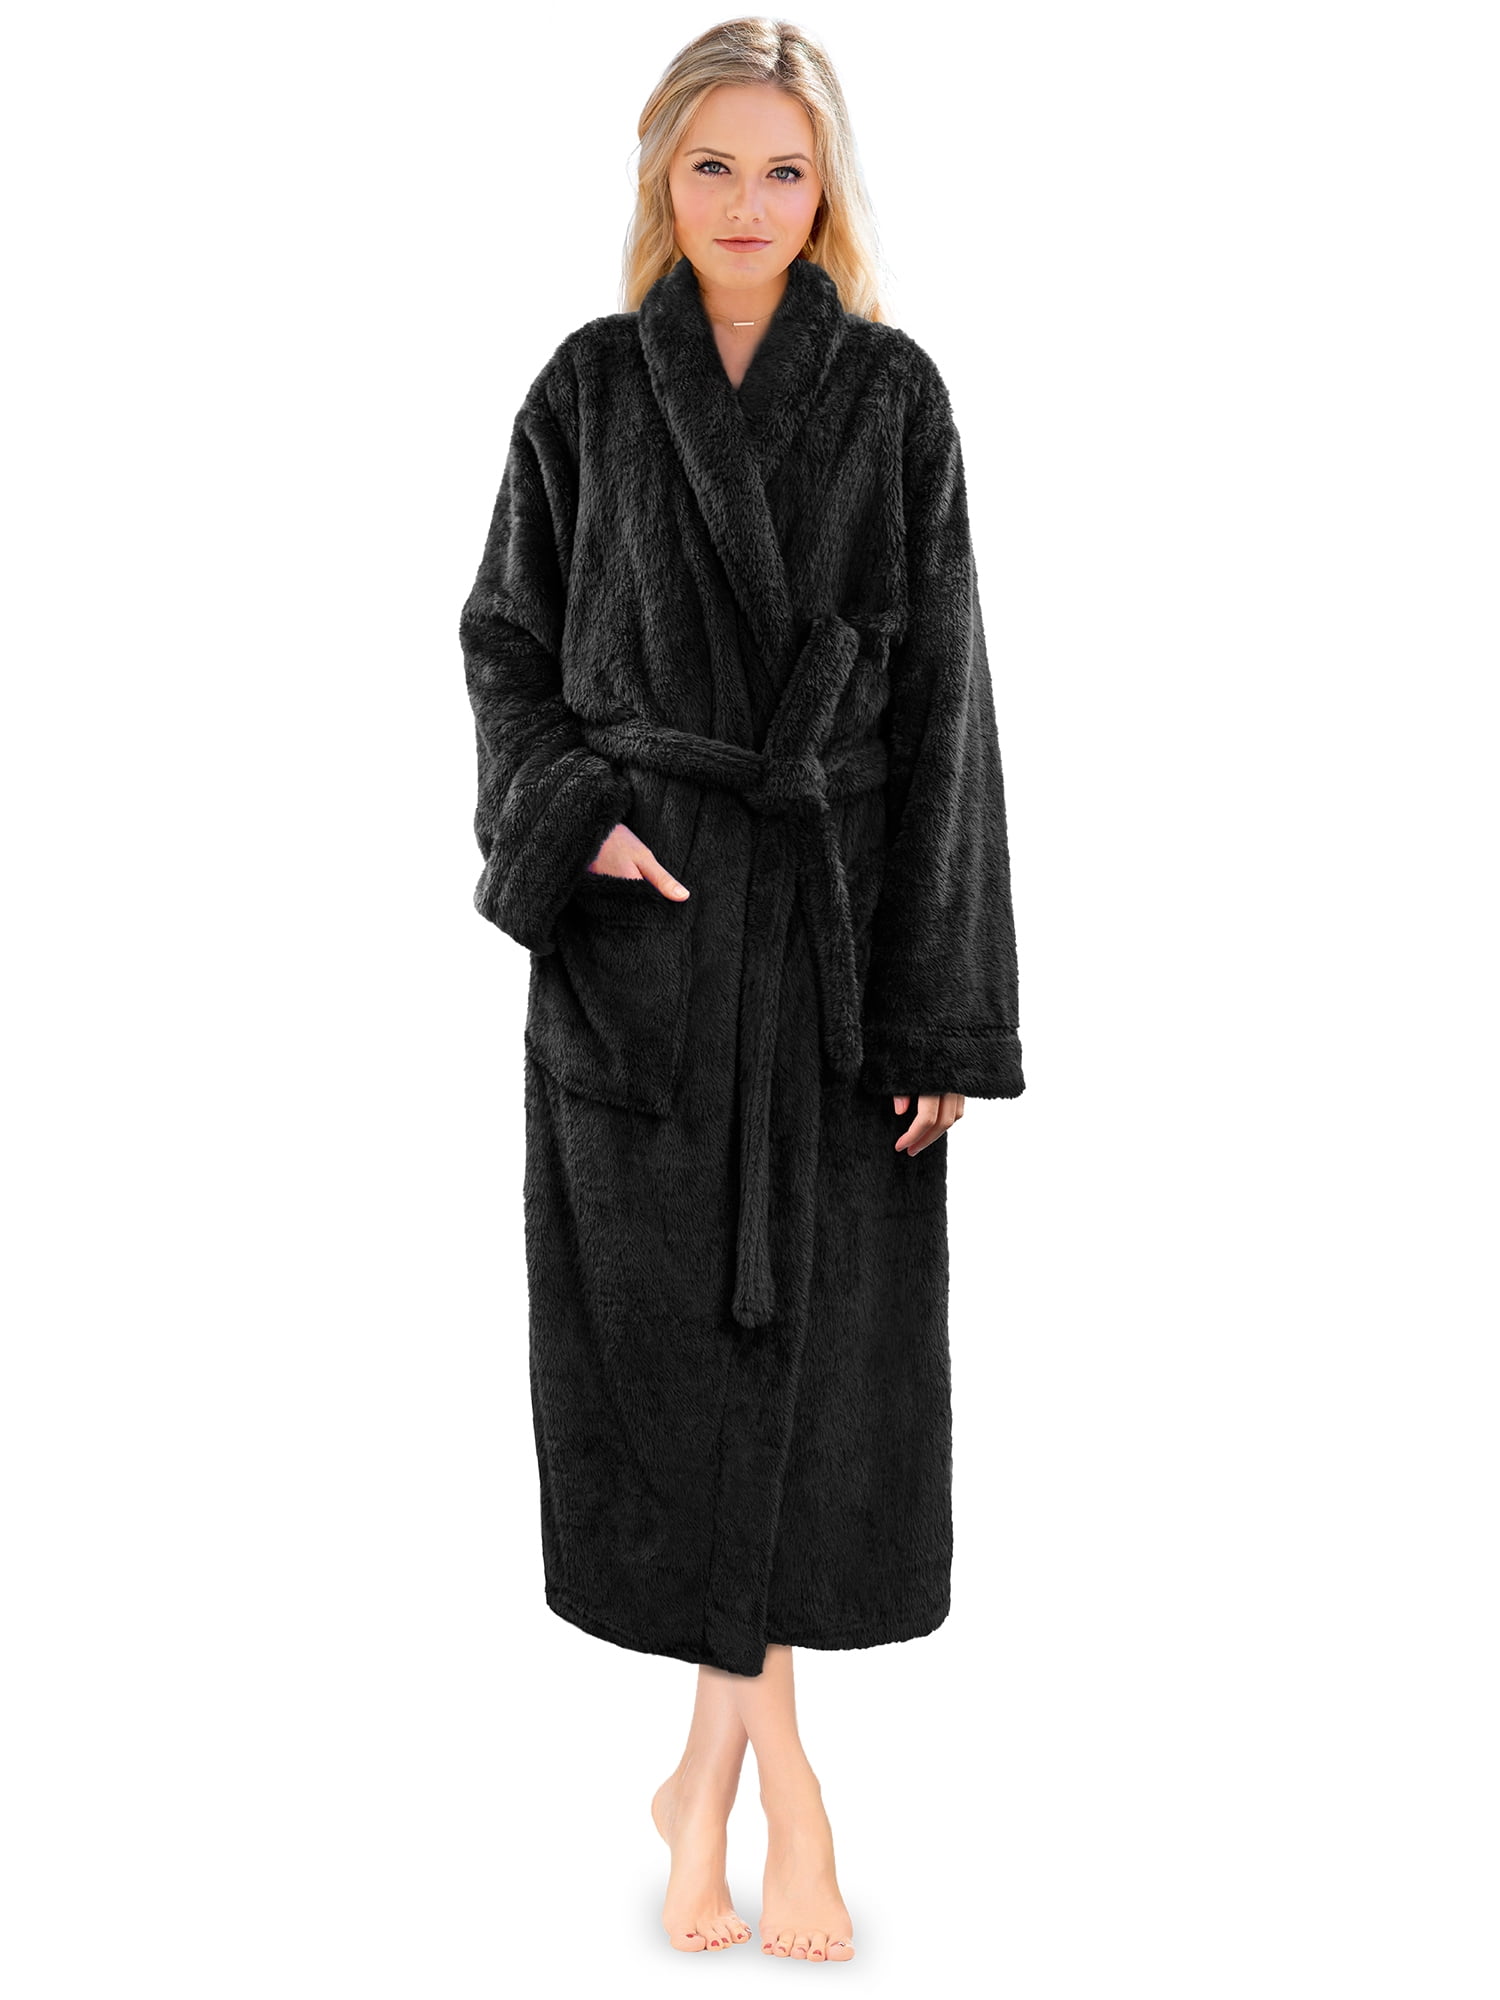 PAVILIA Plush Robe Women Luxurious Fuzzy Warm Spa Robe Fluffy Soft Bathrobe 